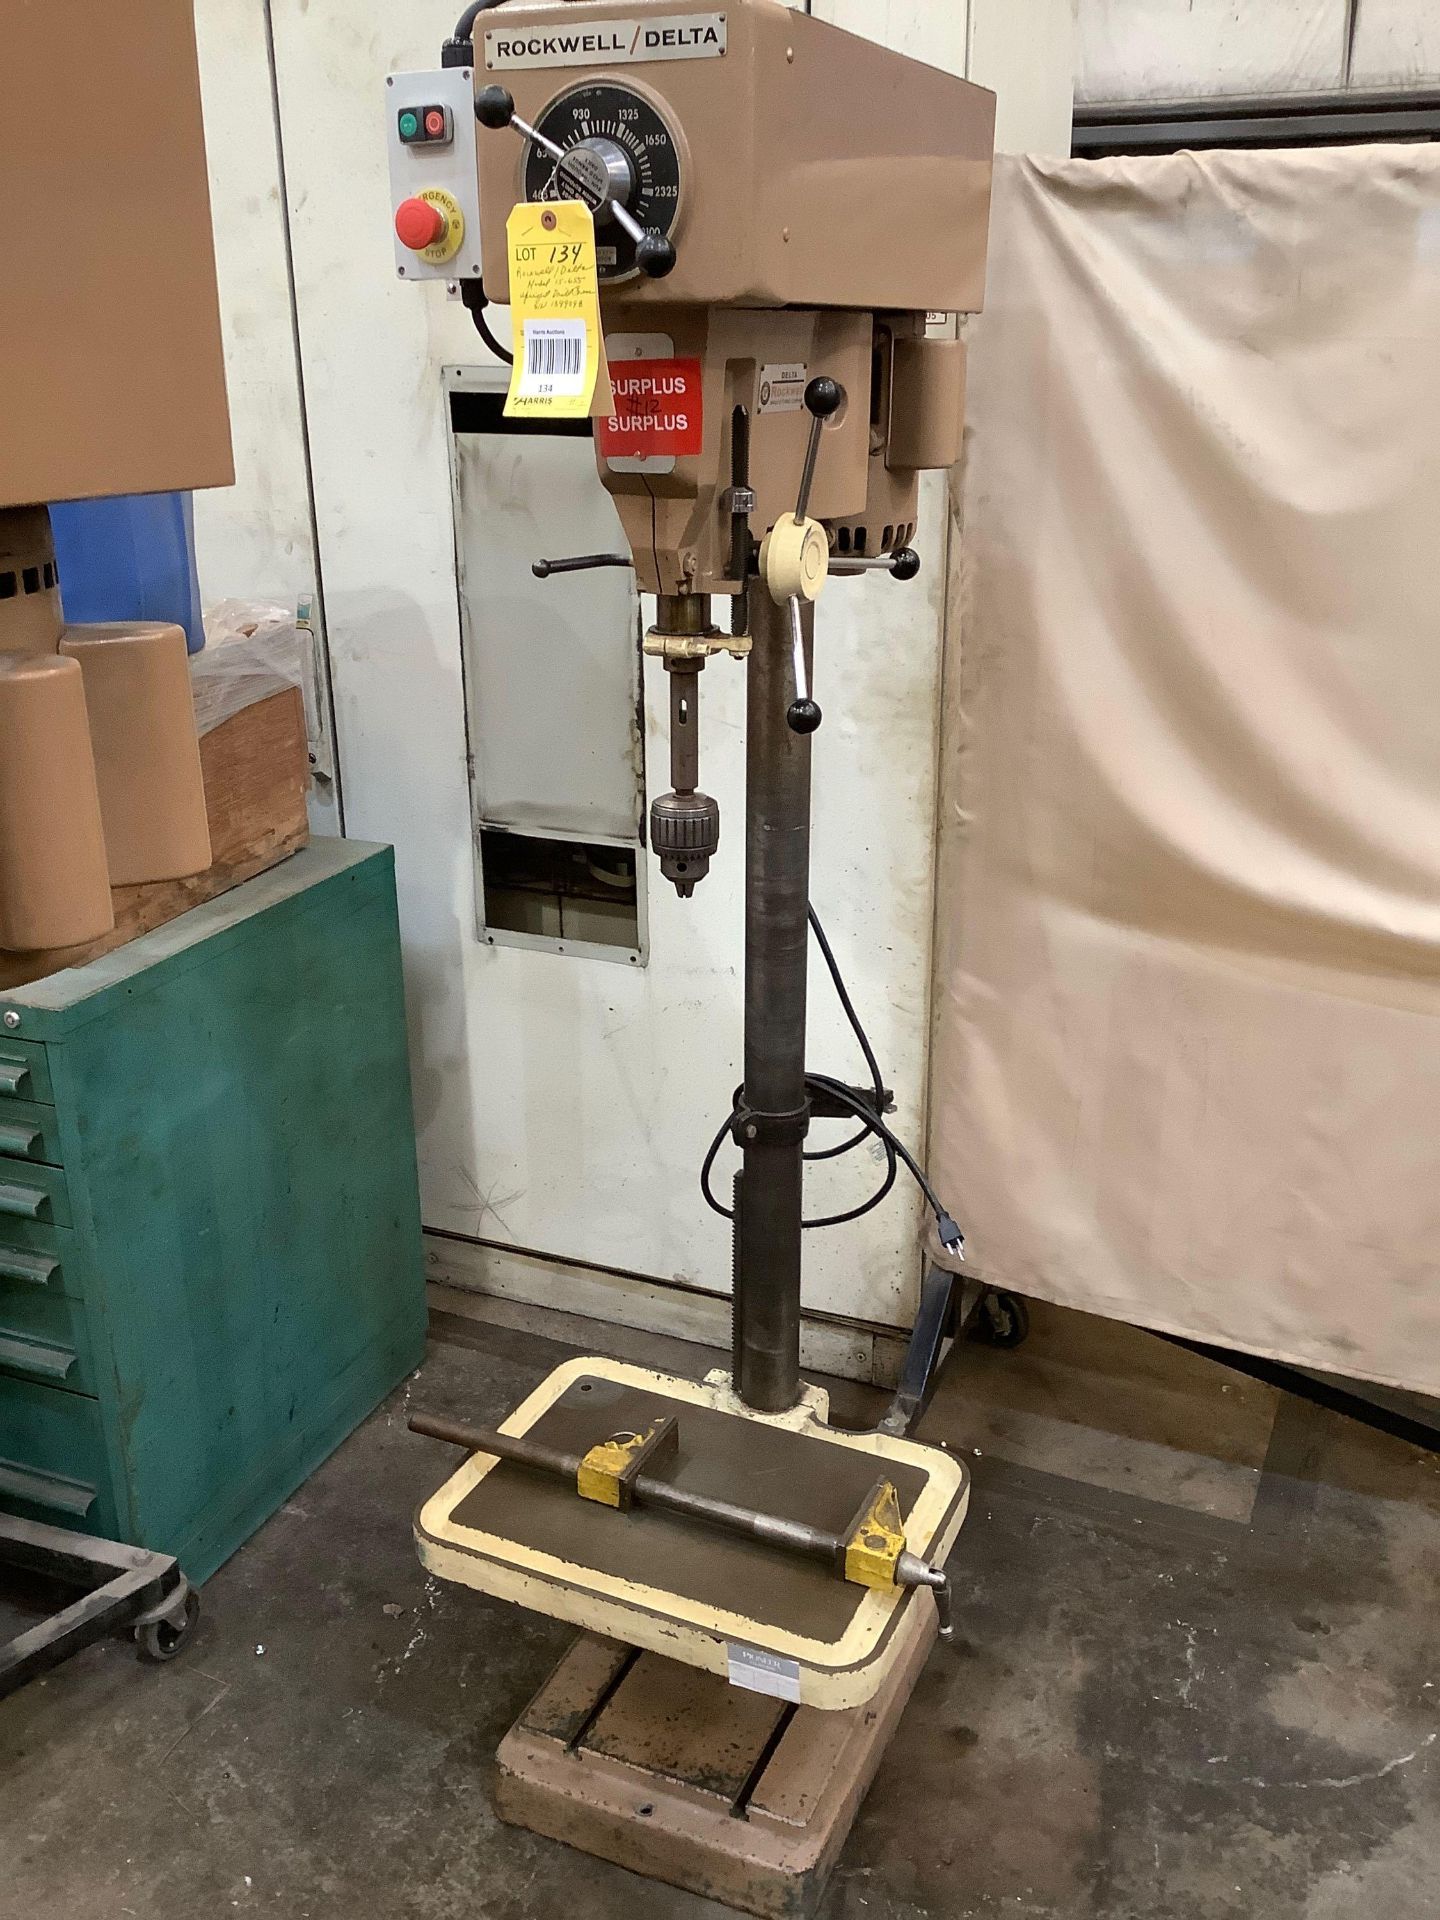 Rockwell / Delta Model 15-655 Upright Drill Press